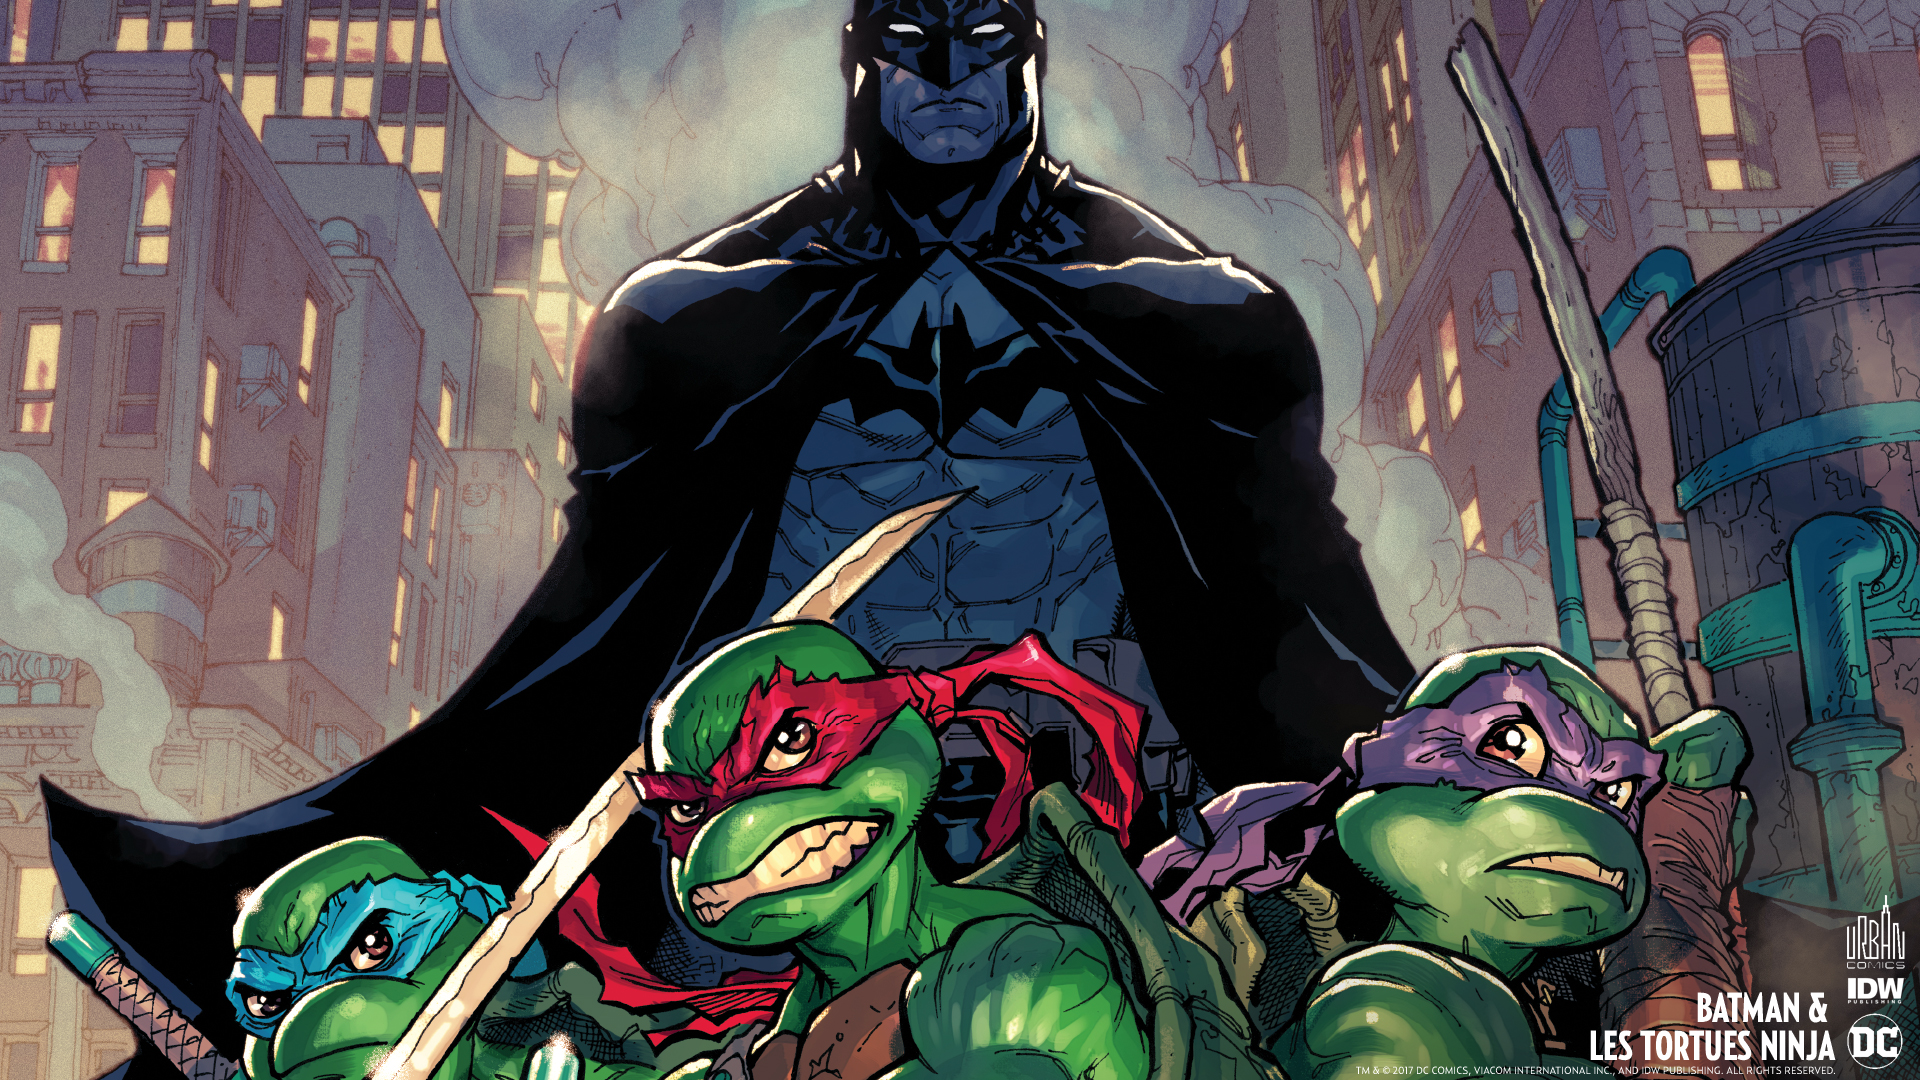 Tmntwallpaper - Batman Ninja Release Date , HD Wallpaper & Backgrounds